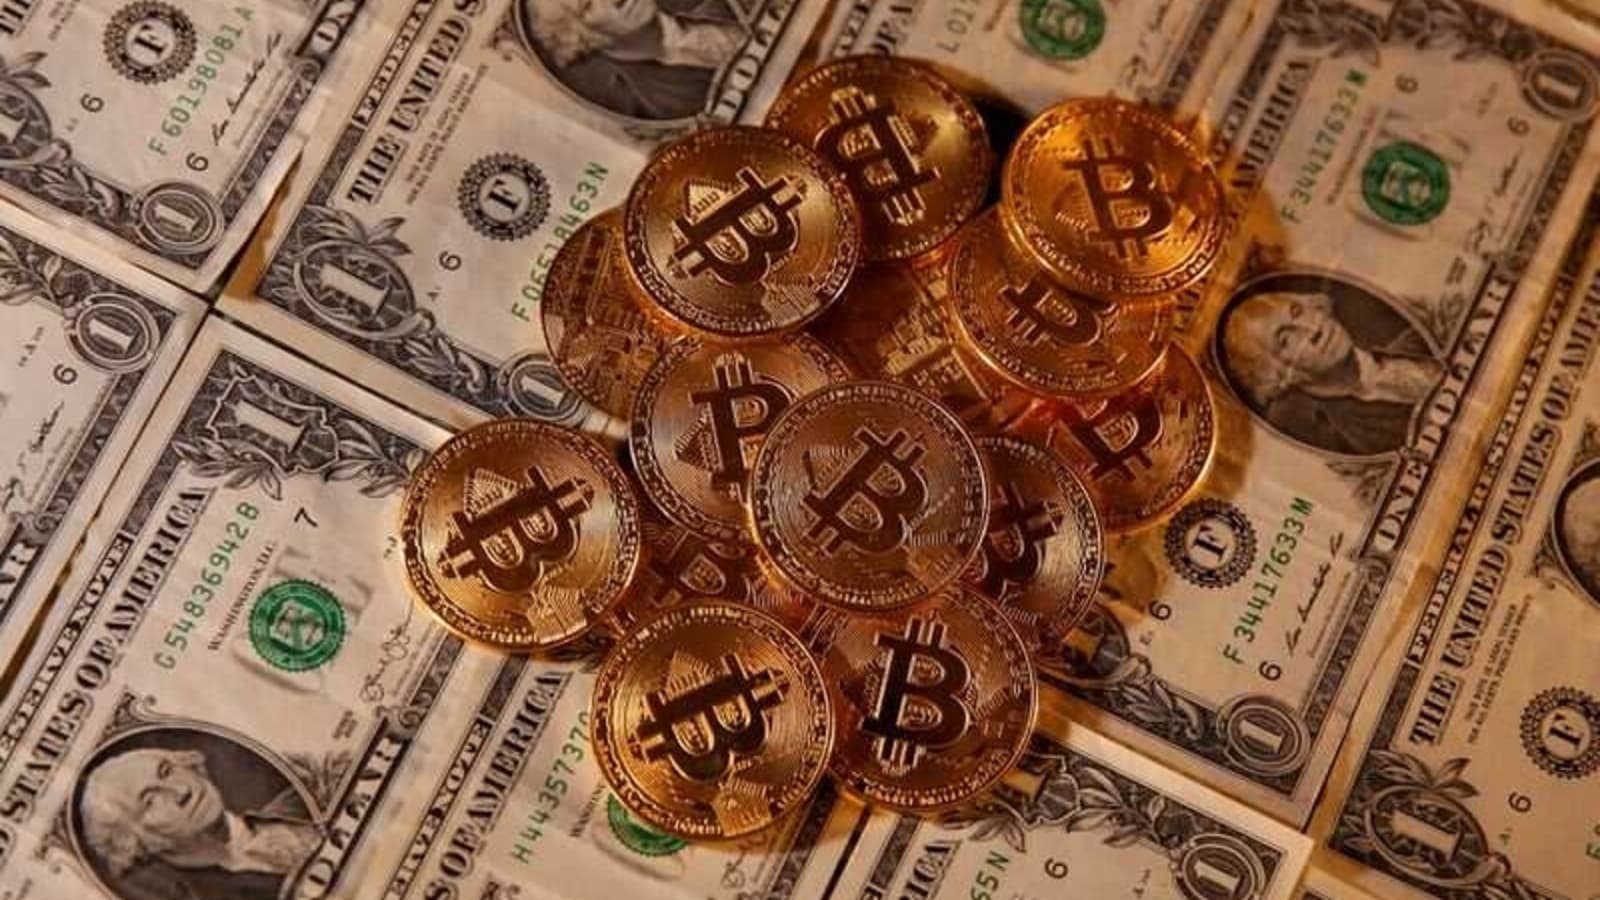 70 dollarsin bitcoin